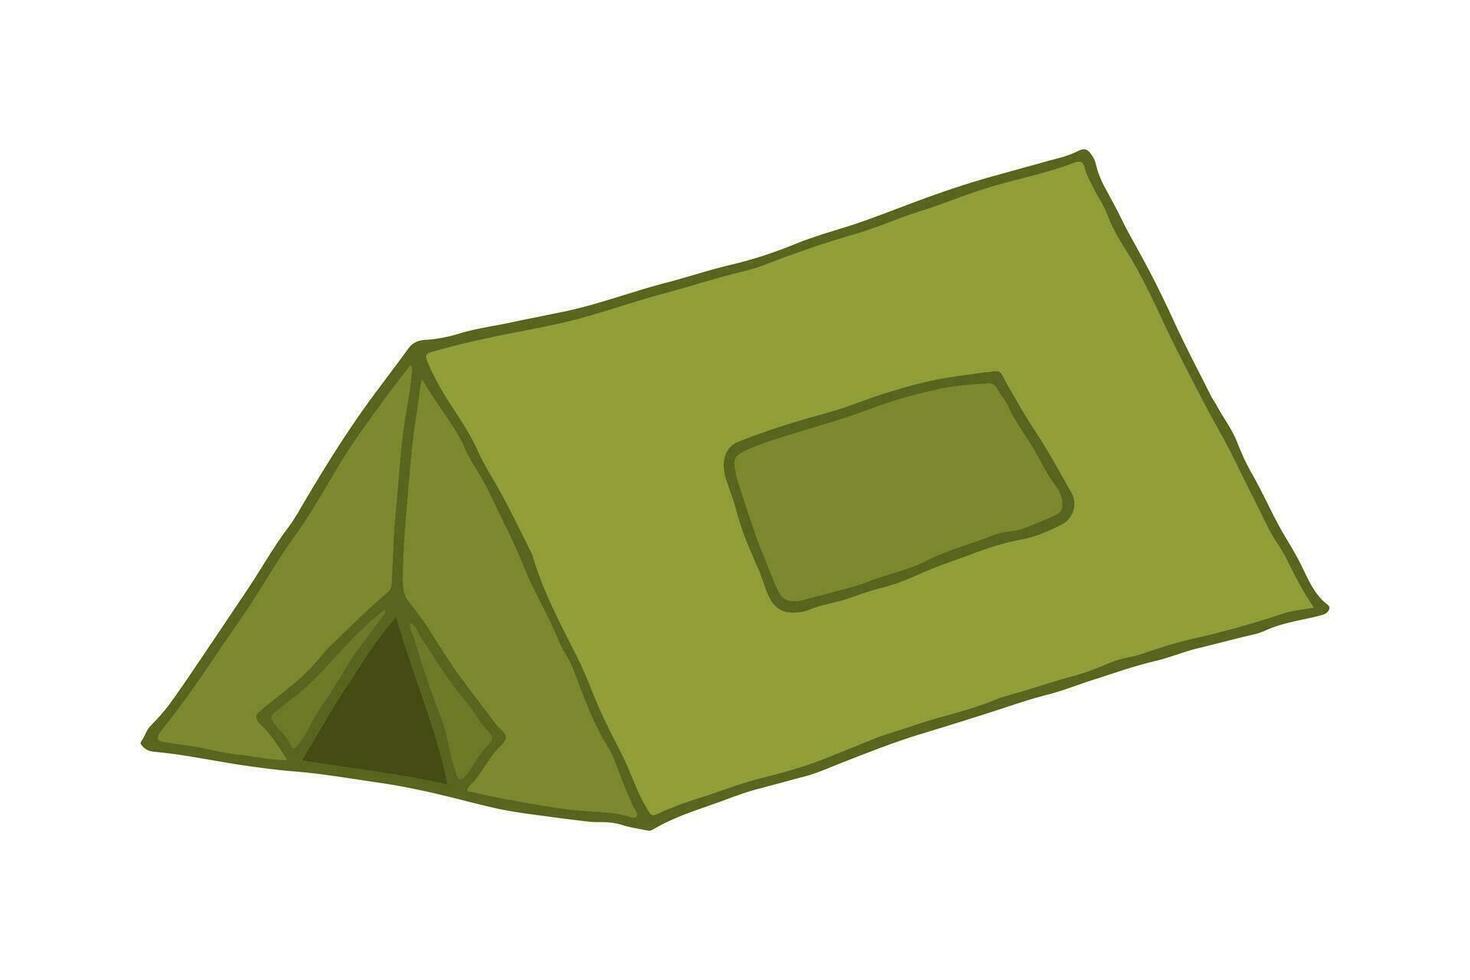 groen camping tent. vector tekening hand- getrokken kleurrijk illustratie voor camping, hiking, lokaal toerisme